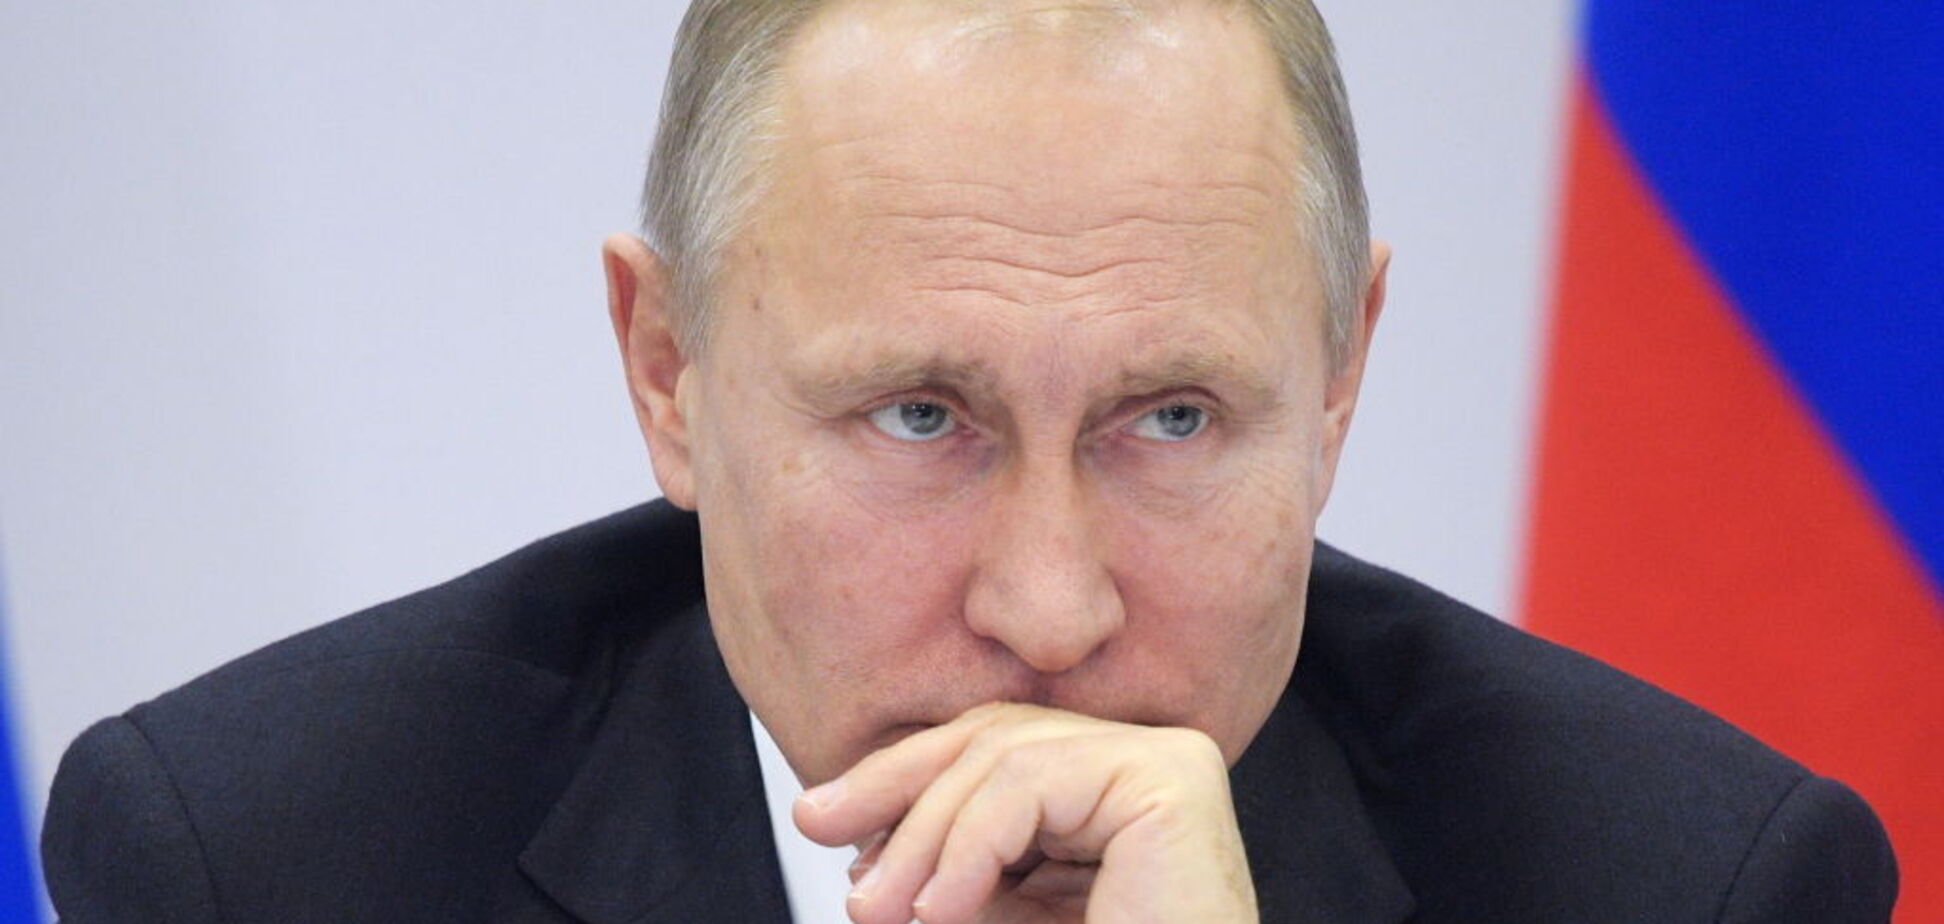 Хвороба Путіна: чому в Росії виникла паніка